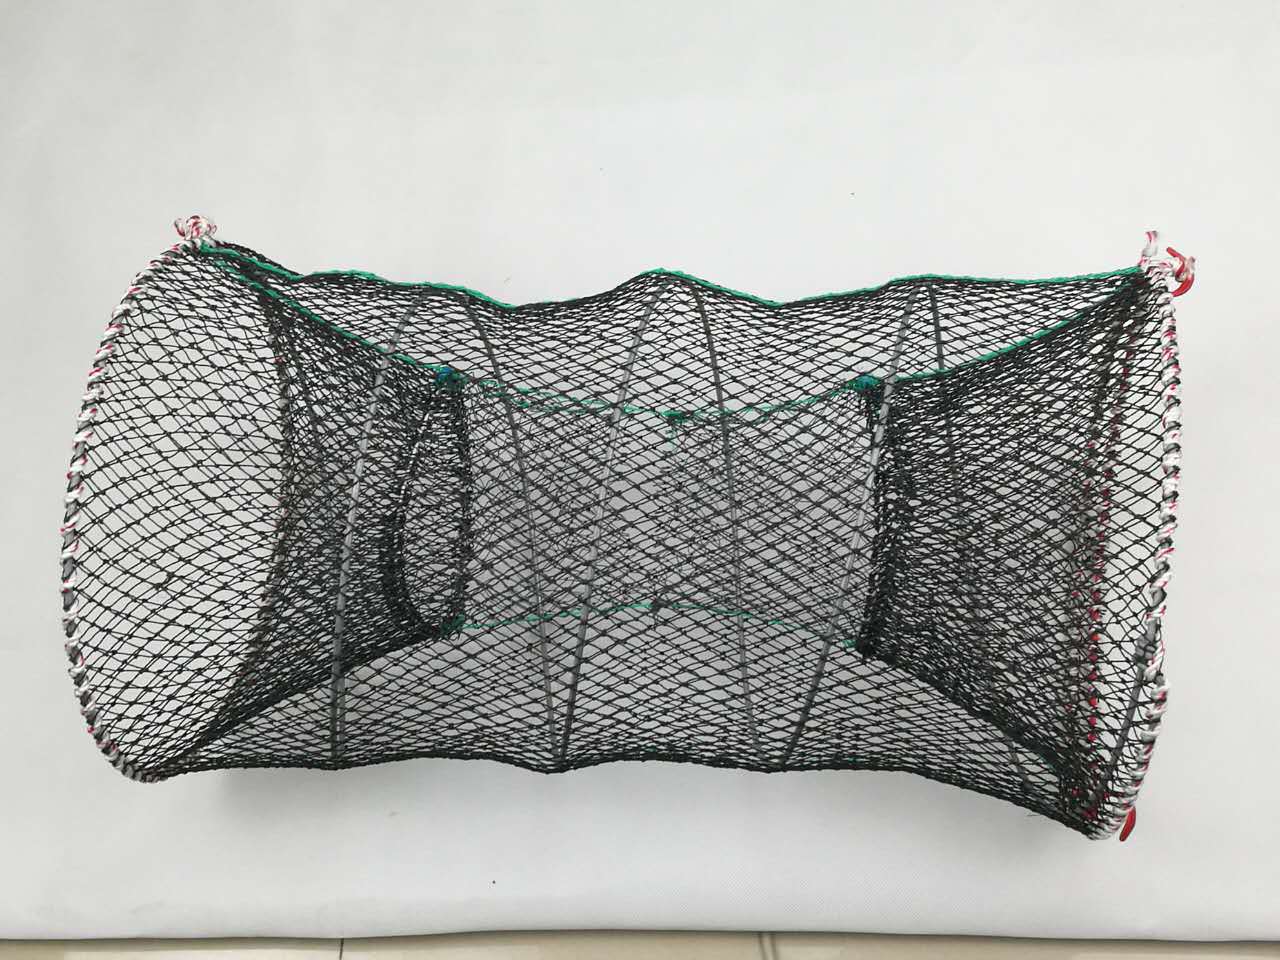 方网 渔网 捕虾笼 渔具抬钓搬鱼网 开放式捕鱼笼-阿里巴巴